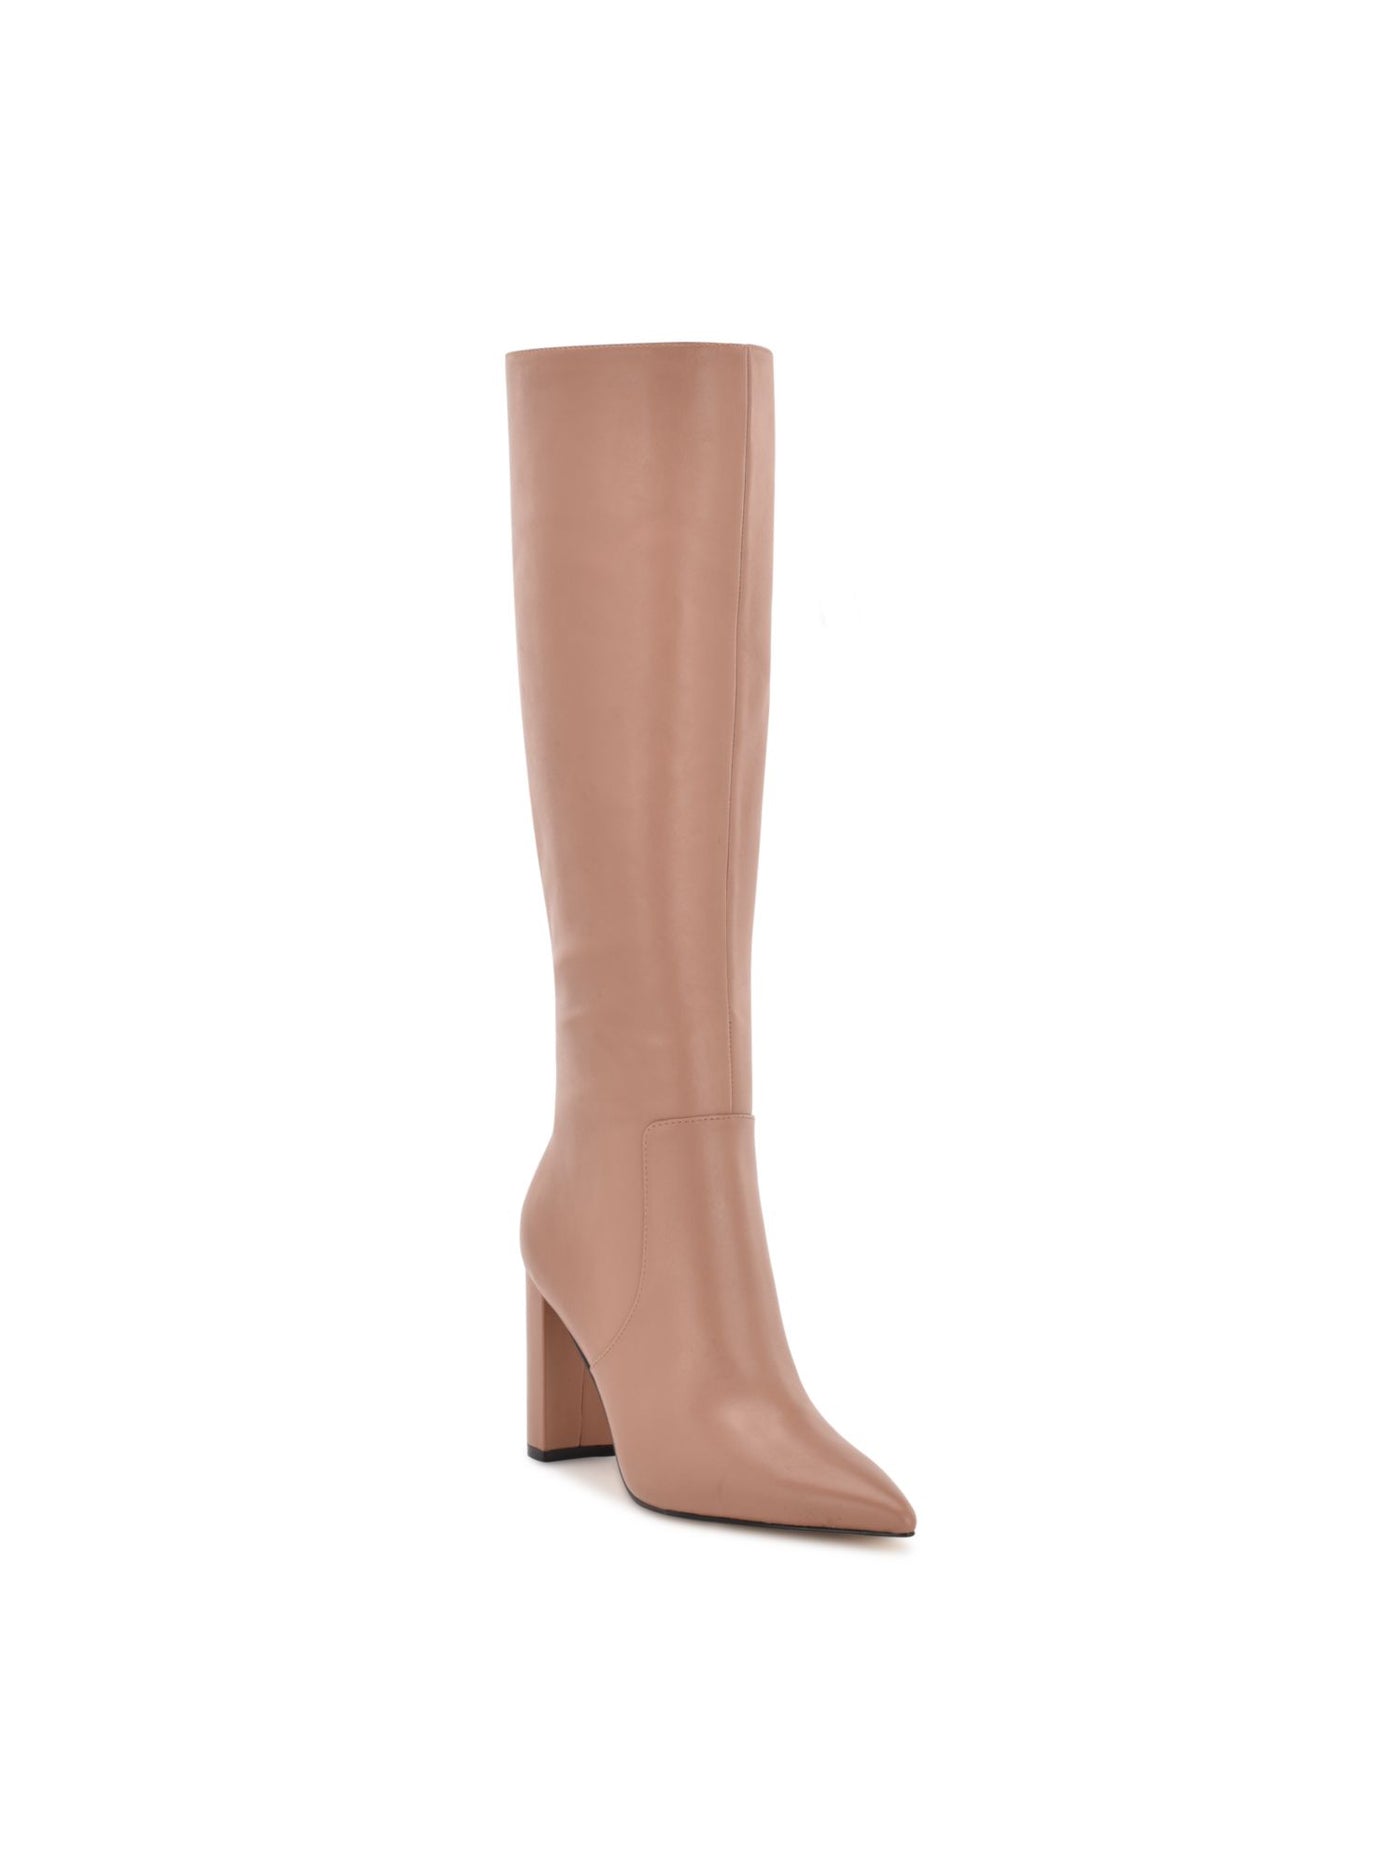 NINE WEST Womens Beige Comfort Danee Pointy Toe Block Heel Zip-Up Leather Boots Shoes 7 M